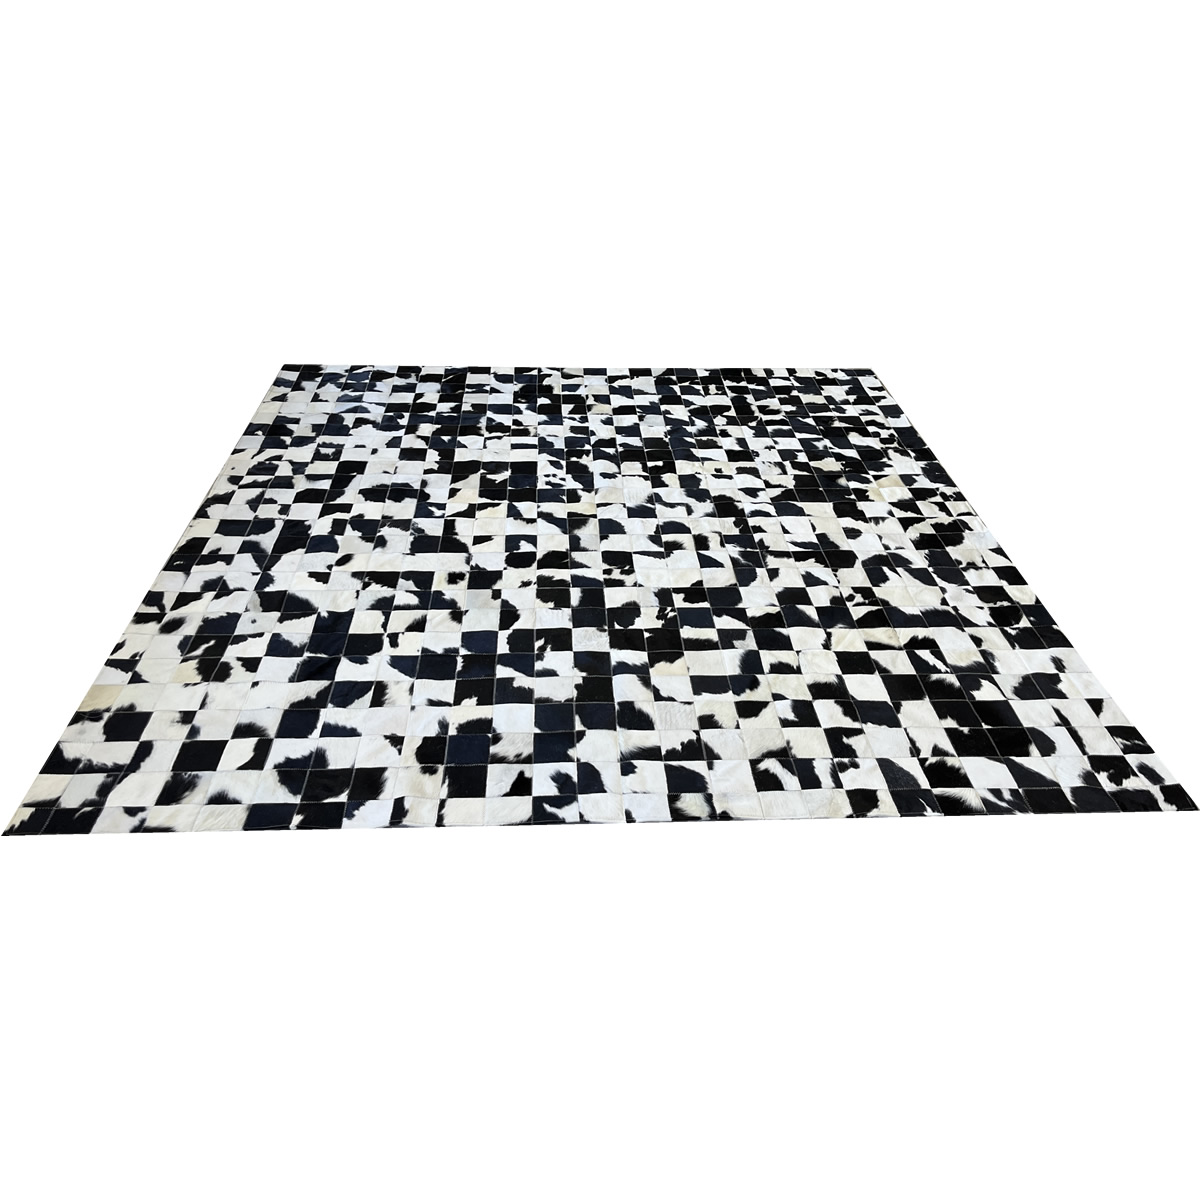 Tapete de couro preto branco malhado 2,50x2,50 sem bordas